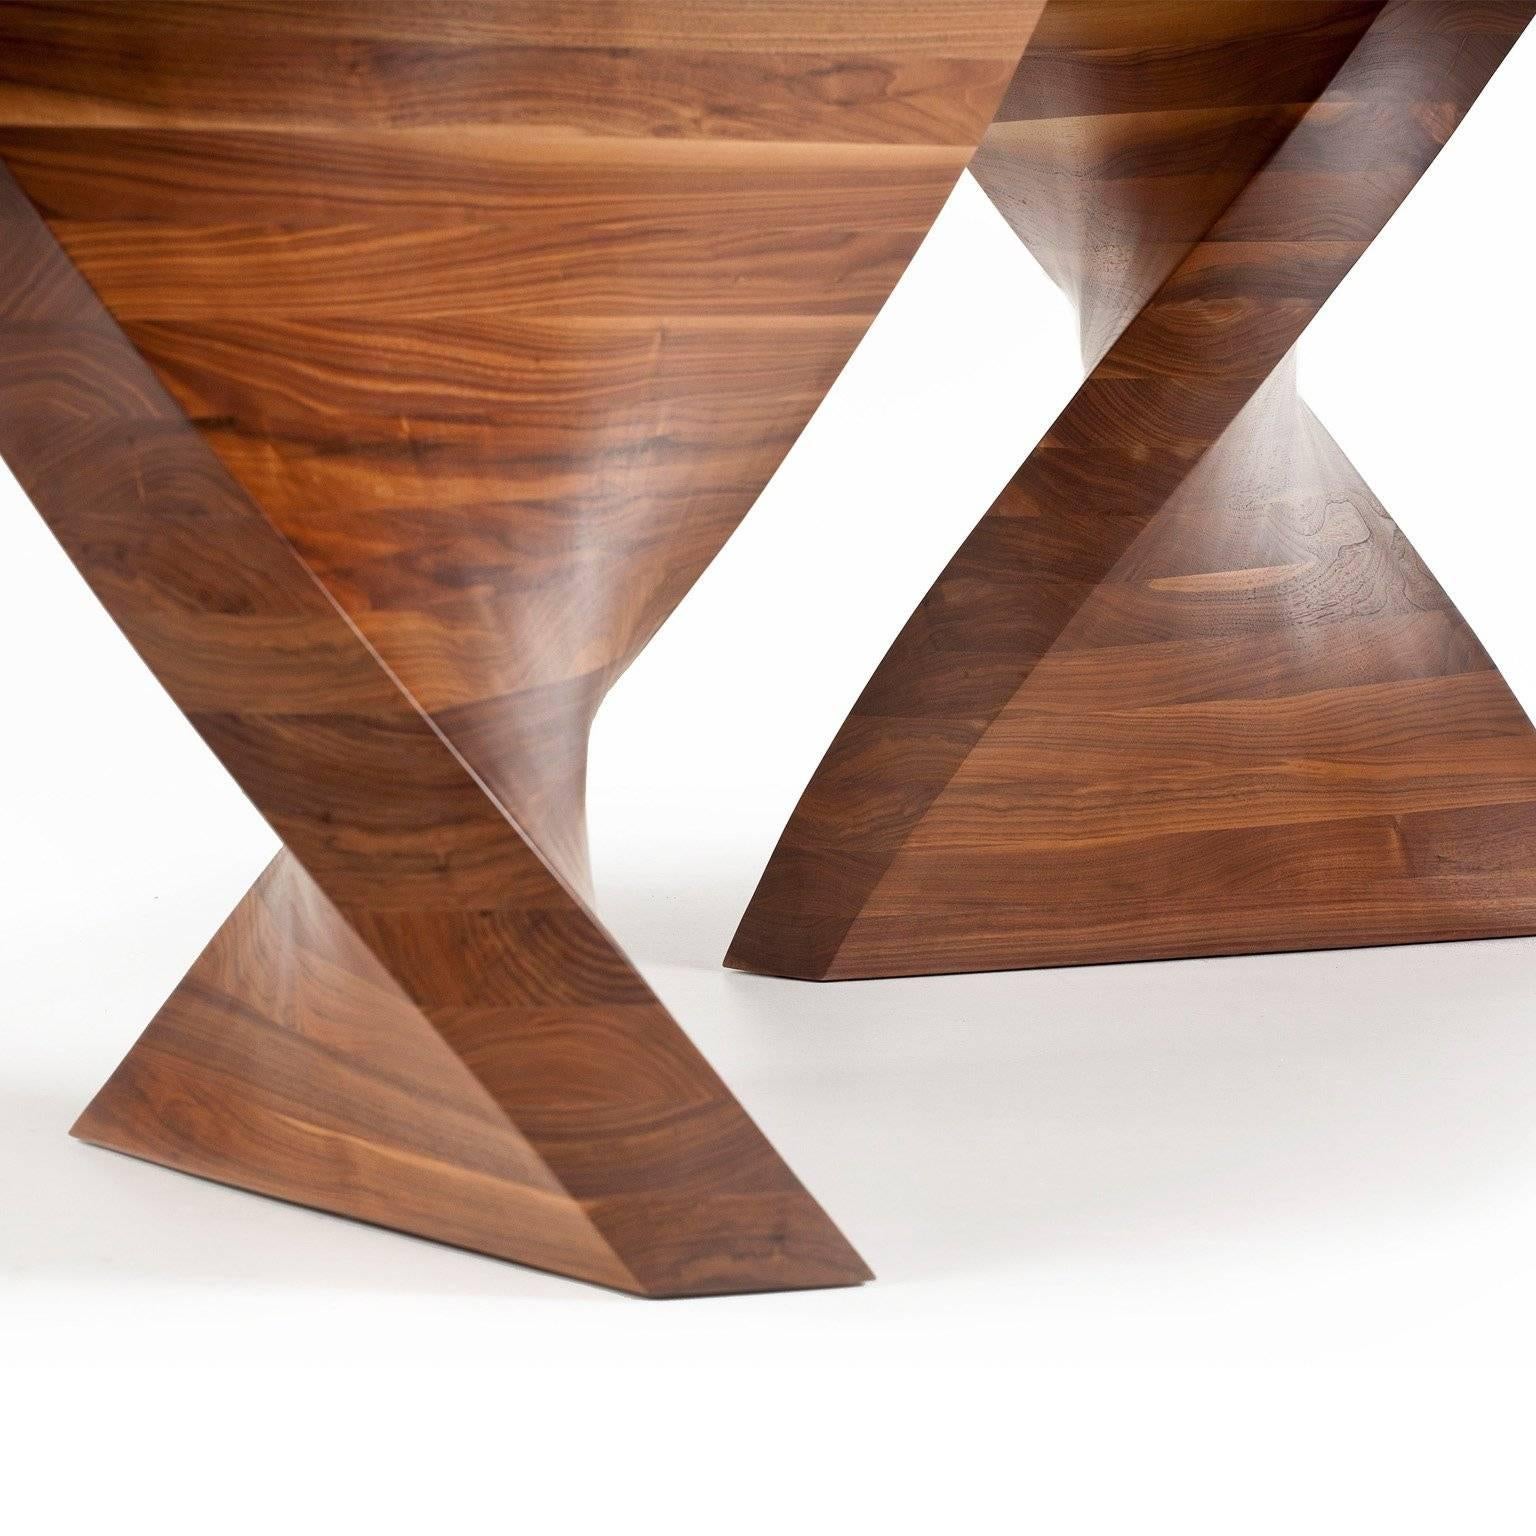 Ein auffälliger Esstisch, der mit der besten Technik, Handwerkskunst und Verarbeitung geschaffen wurde. 

Entworfen und gefertigt von Dunleavy Bespoke in Irland aus dem schönsten amerikanischen Schwarznussbaum. Dieser organisch inspirierte,